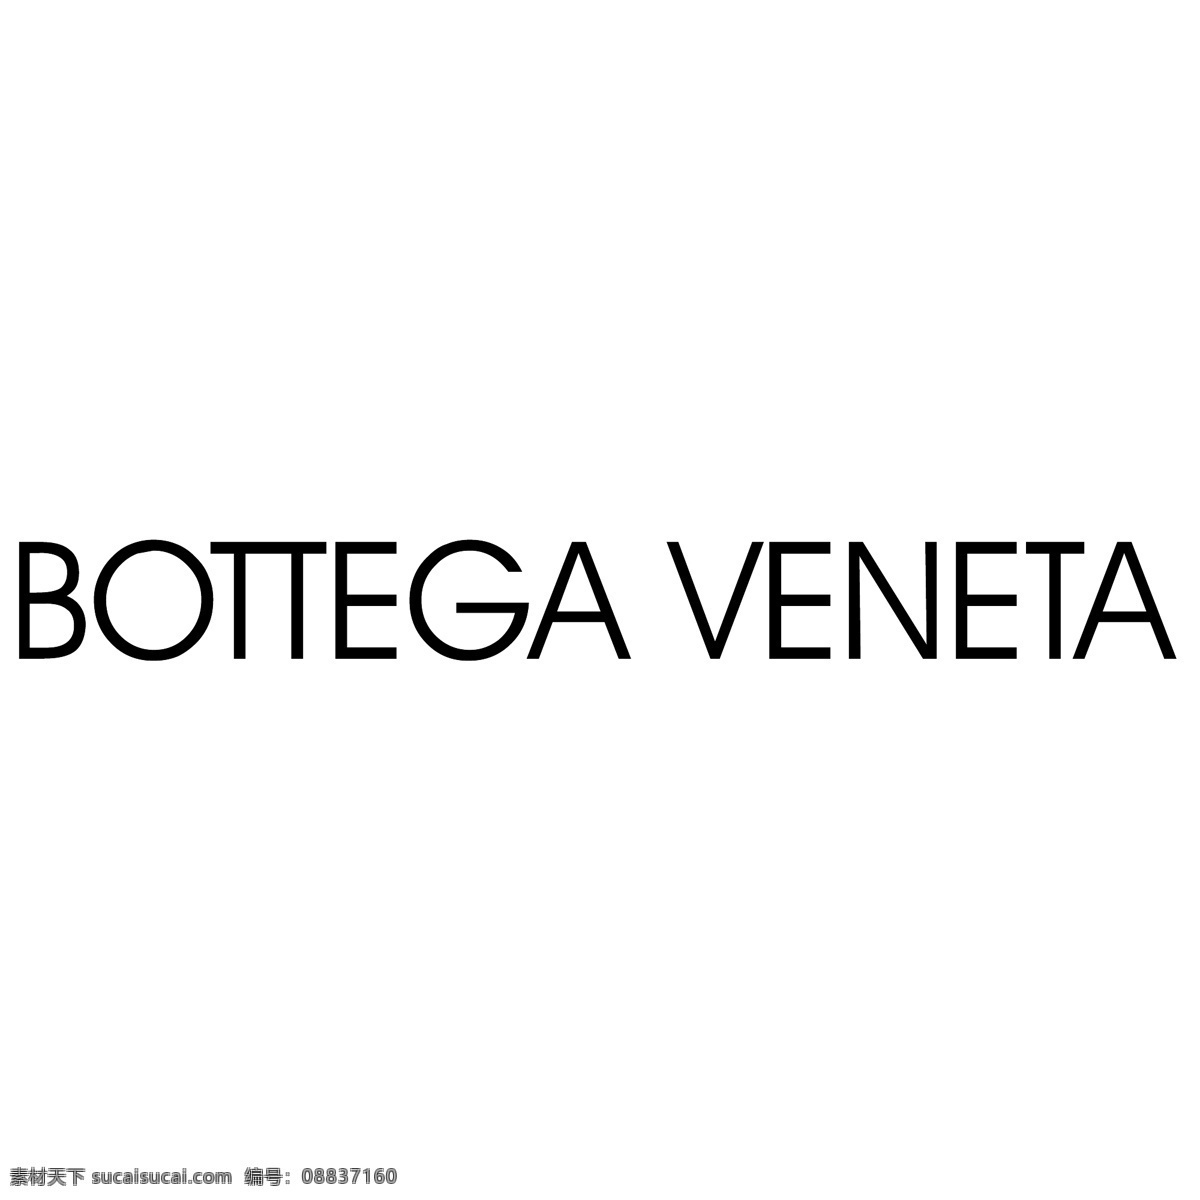 宝缇嘉 免费 bottega veneta 标志 白色